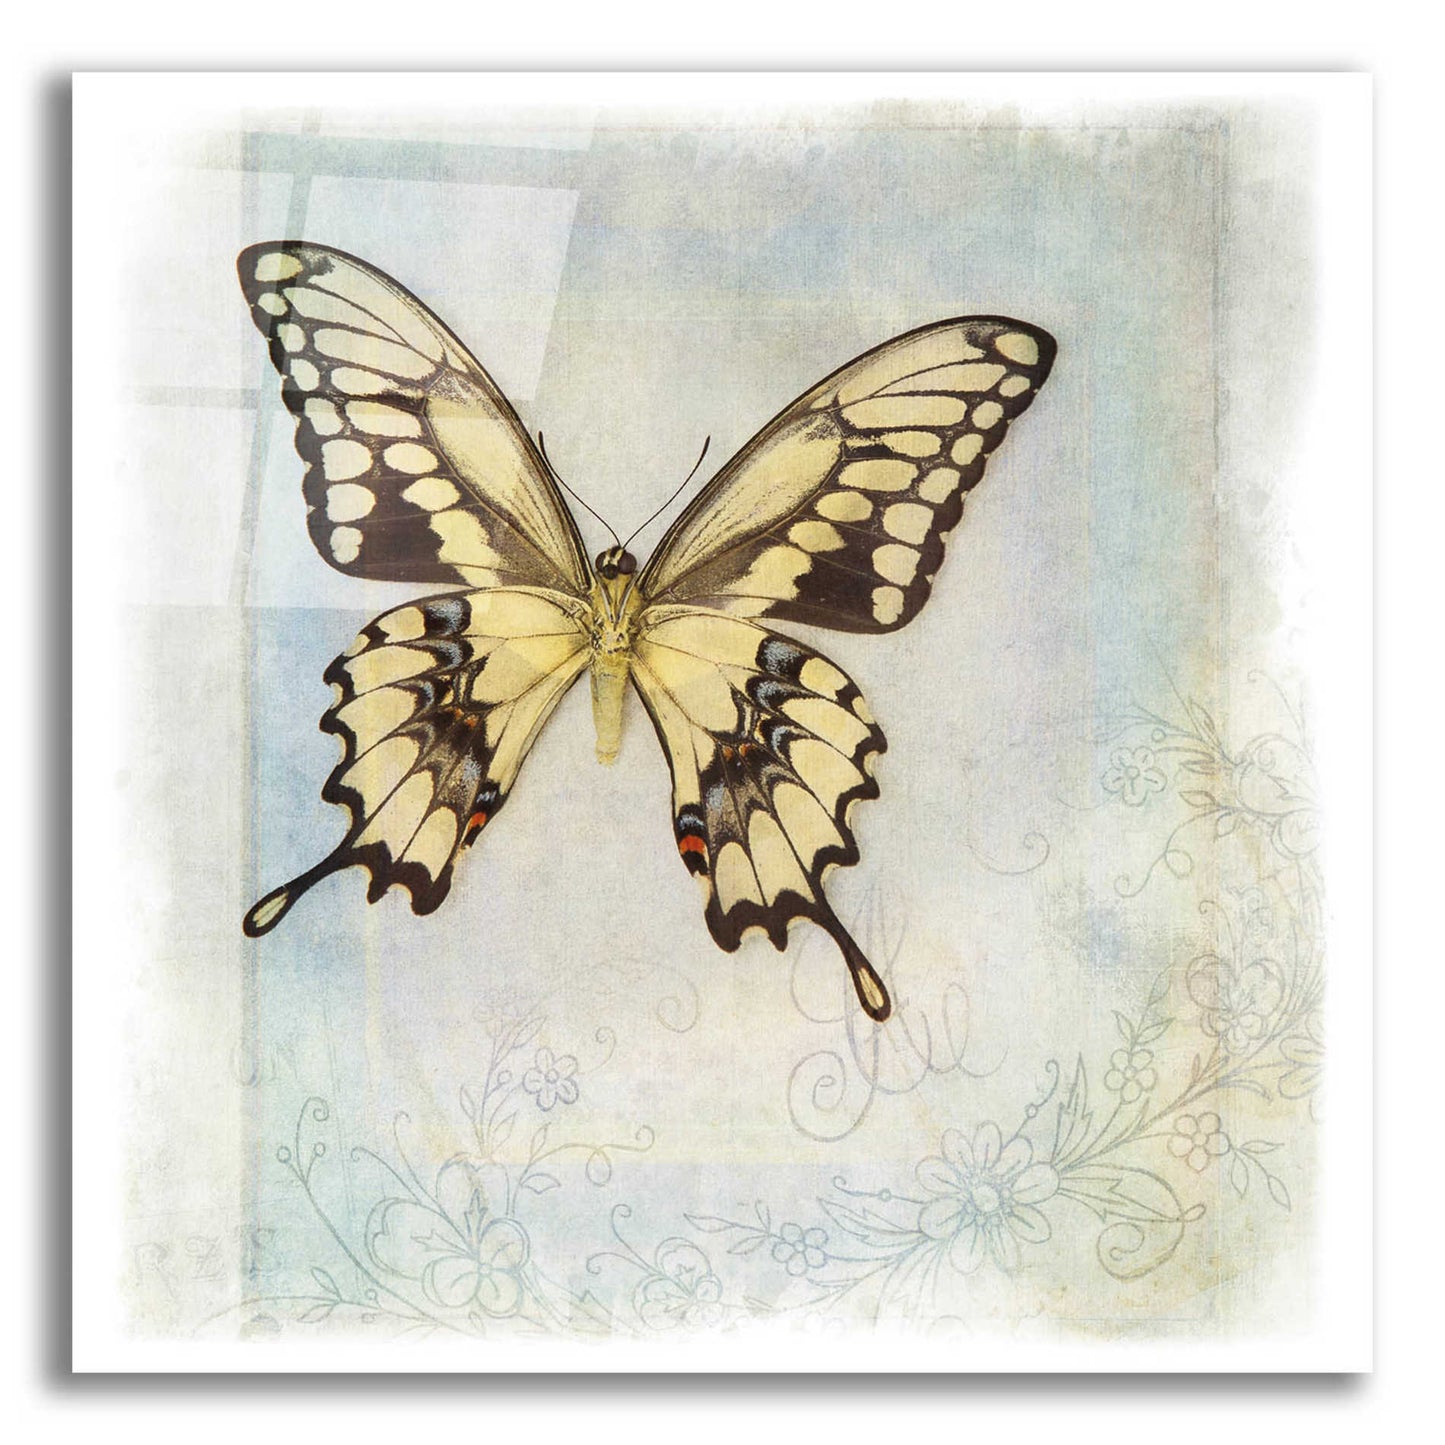 Epic Art 'Floating Butterfly V' by Debra Van Swearingen, Acrylic Glass Wall Art,12x12